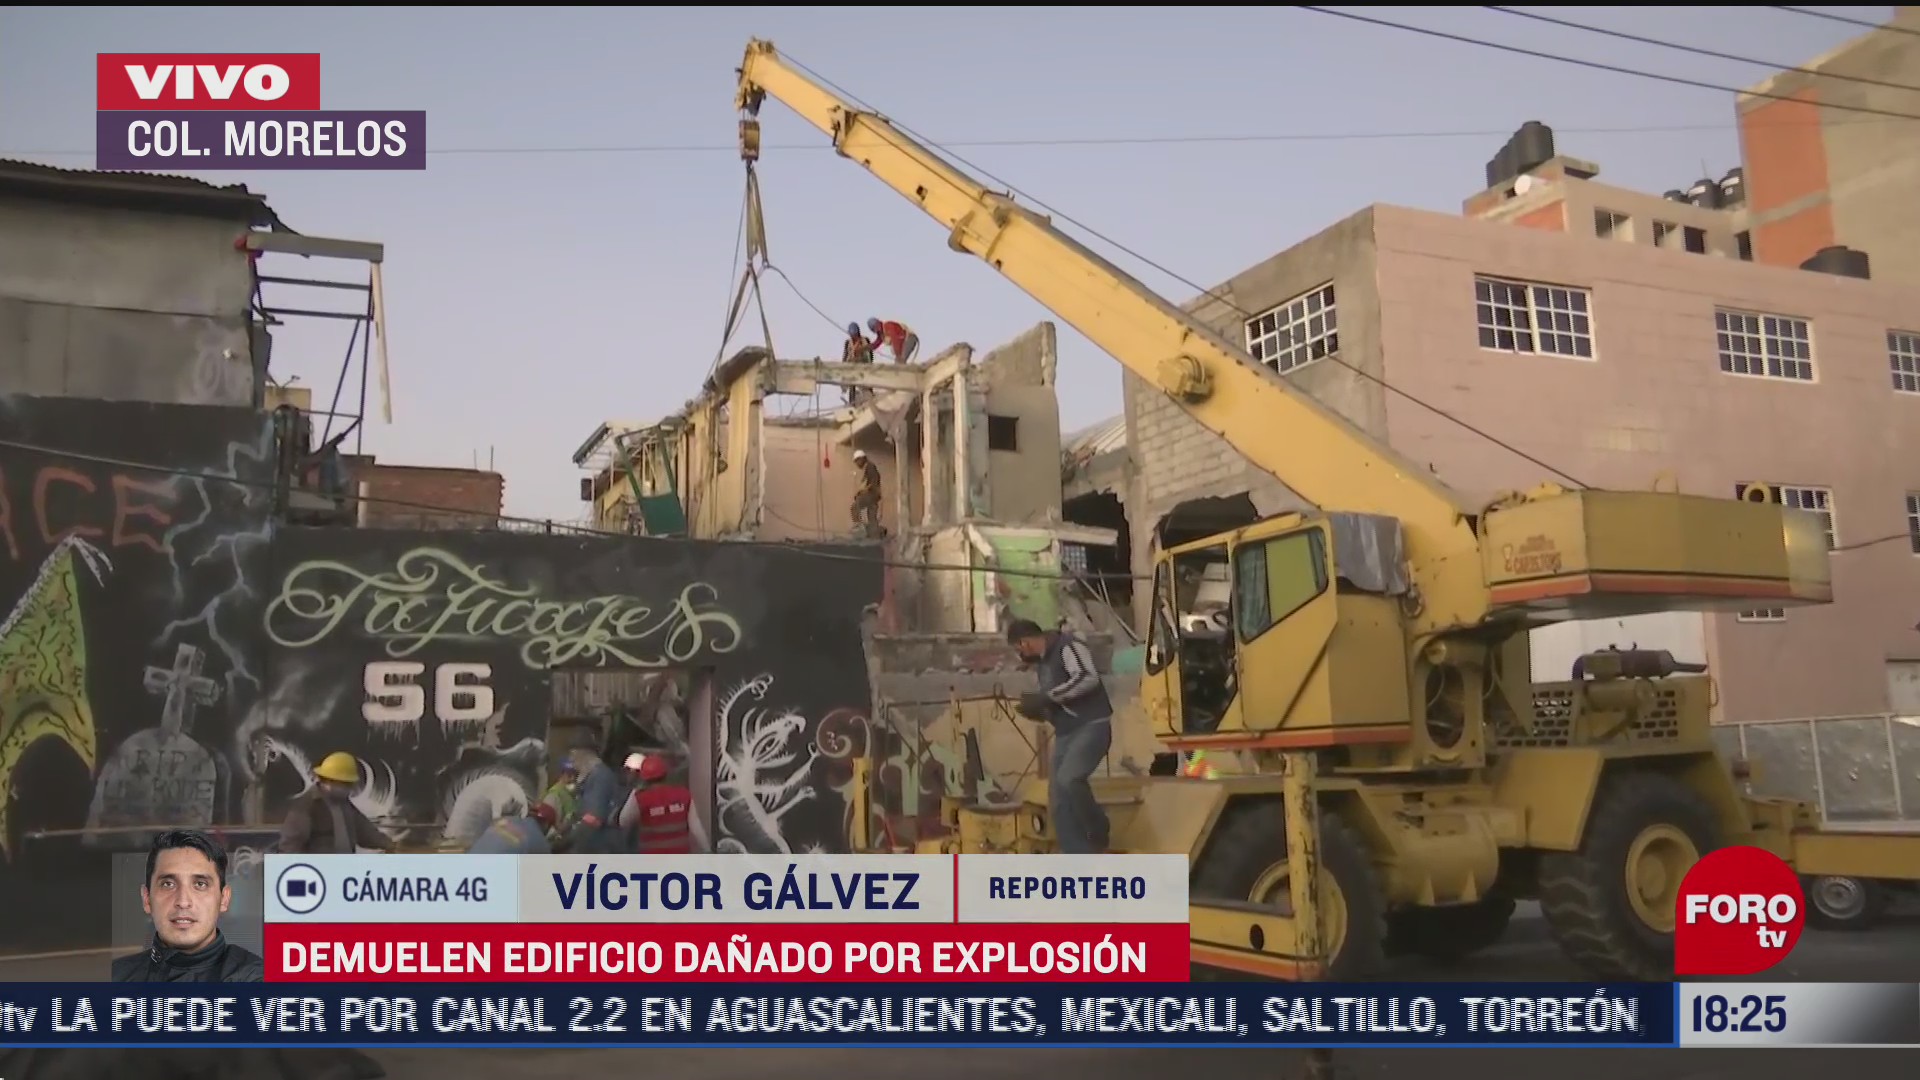 Demolición de edificio dañado tras explosión en colonia Morelos CDMX